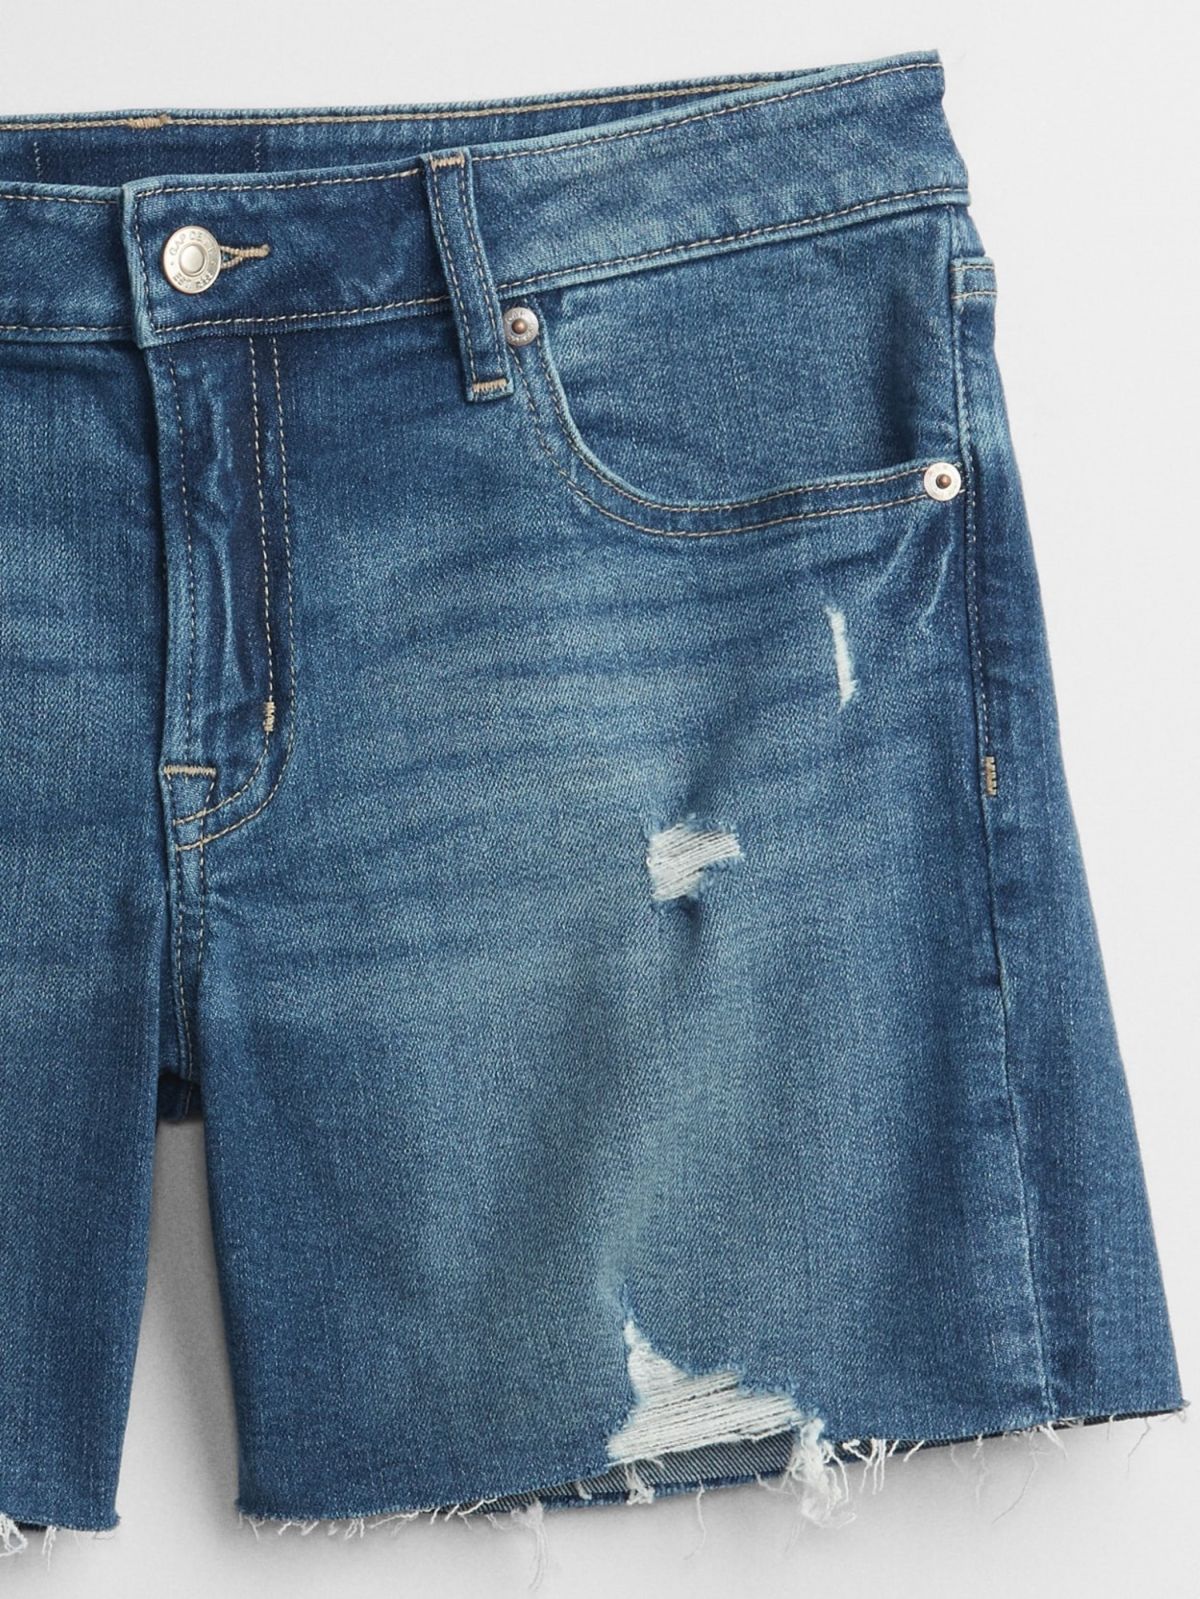  ג'ינס קצר עם קרעים של GAP